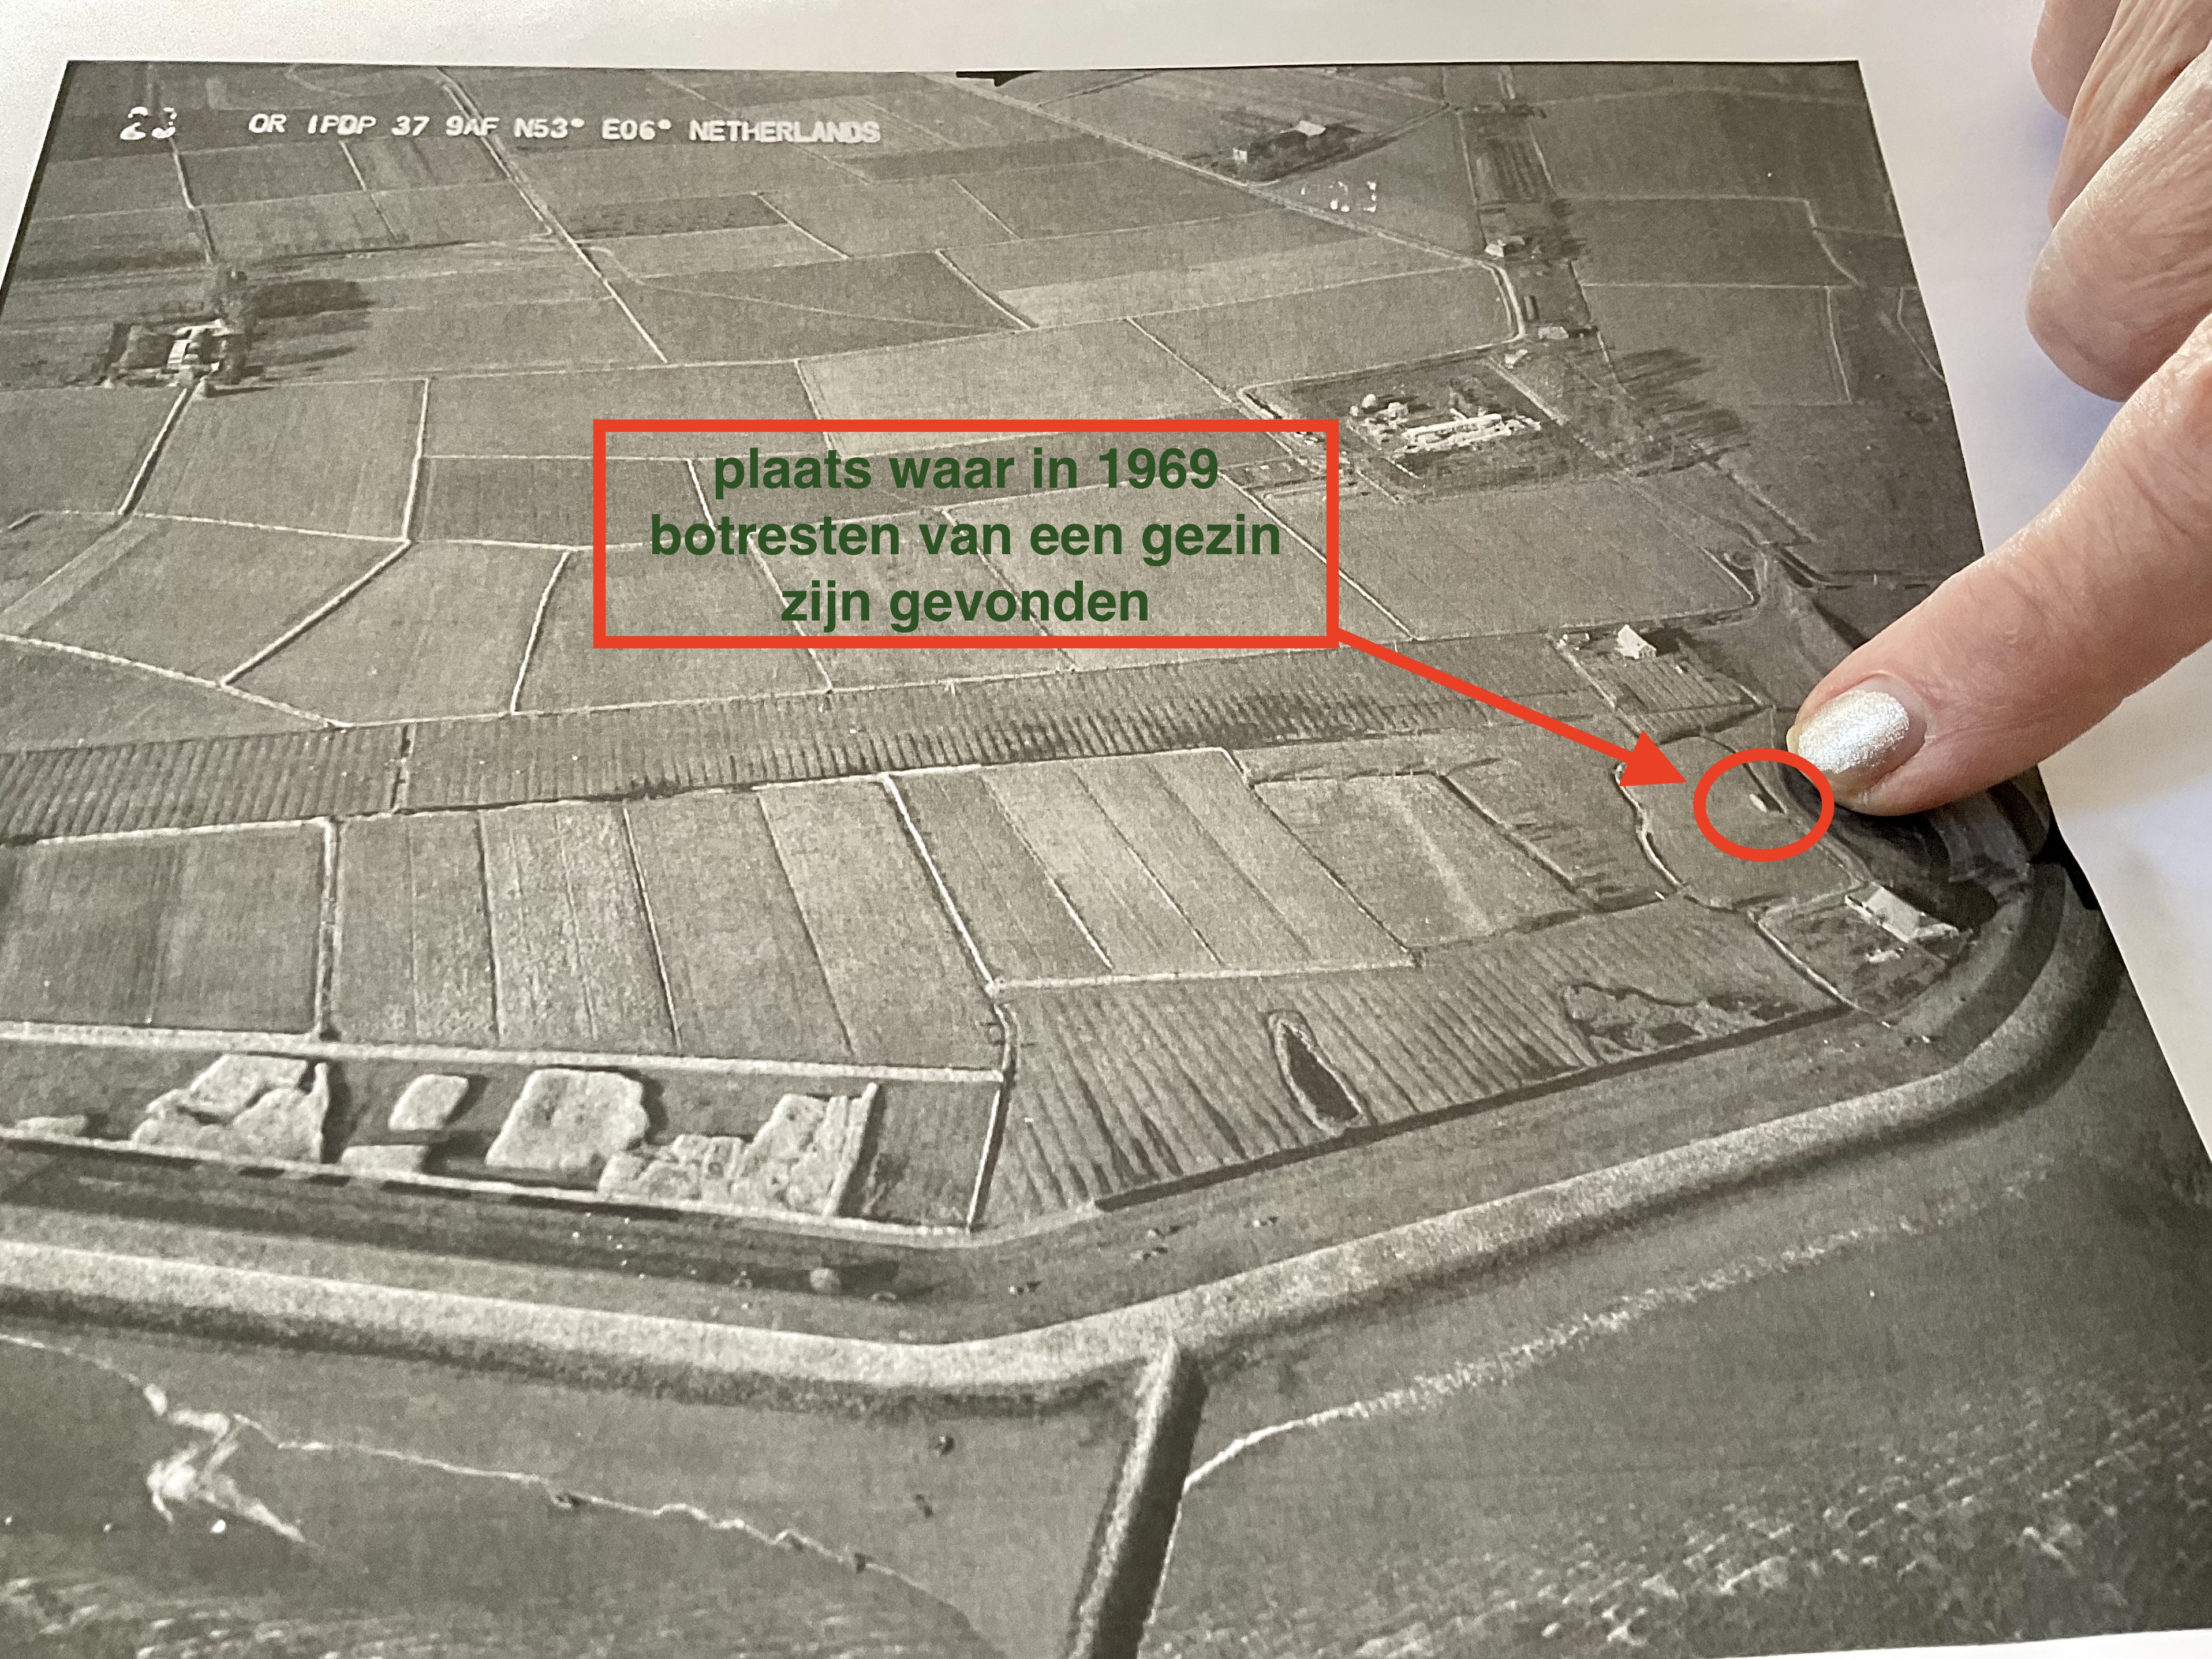 Hebeltje Duursema wijst in april 2022 op een luchtfoto de plaats aan waar een boerderijtje heeft gestaan en waar zij de botresten van een gezin hebben gezien. Foto: april 2022, ©Jur Kuipers.